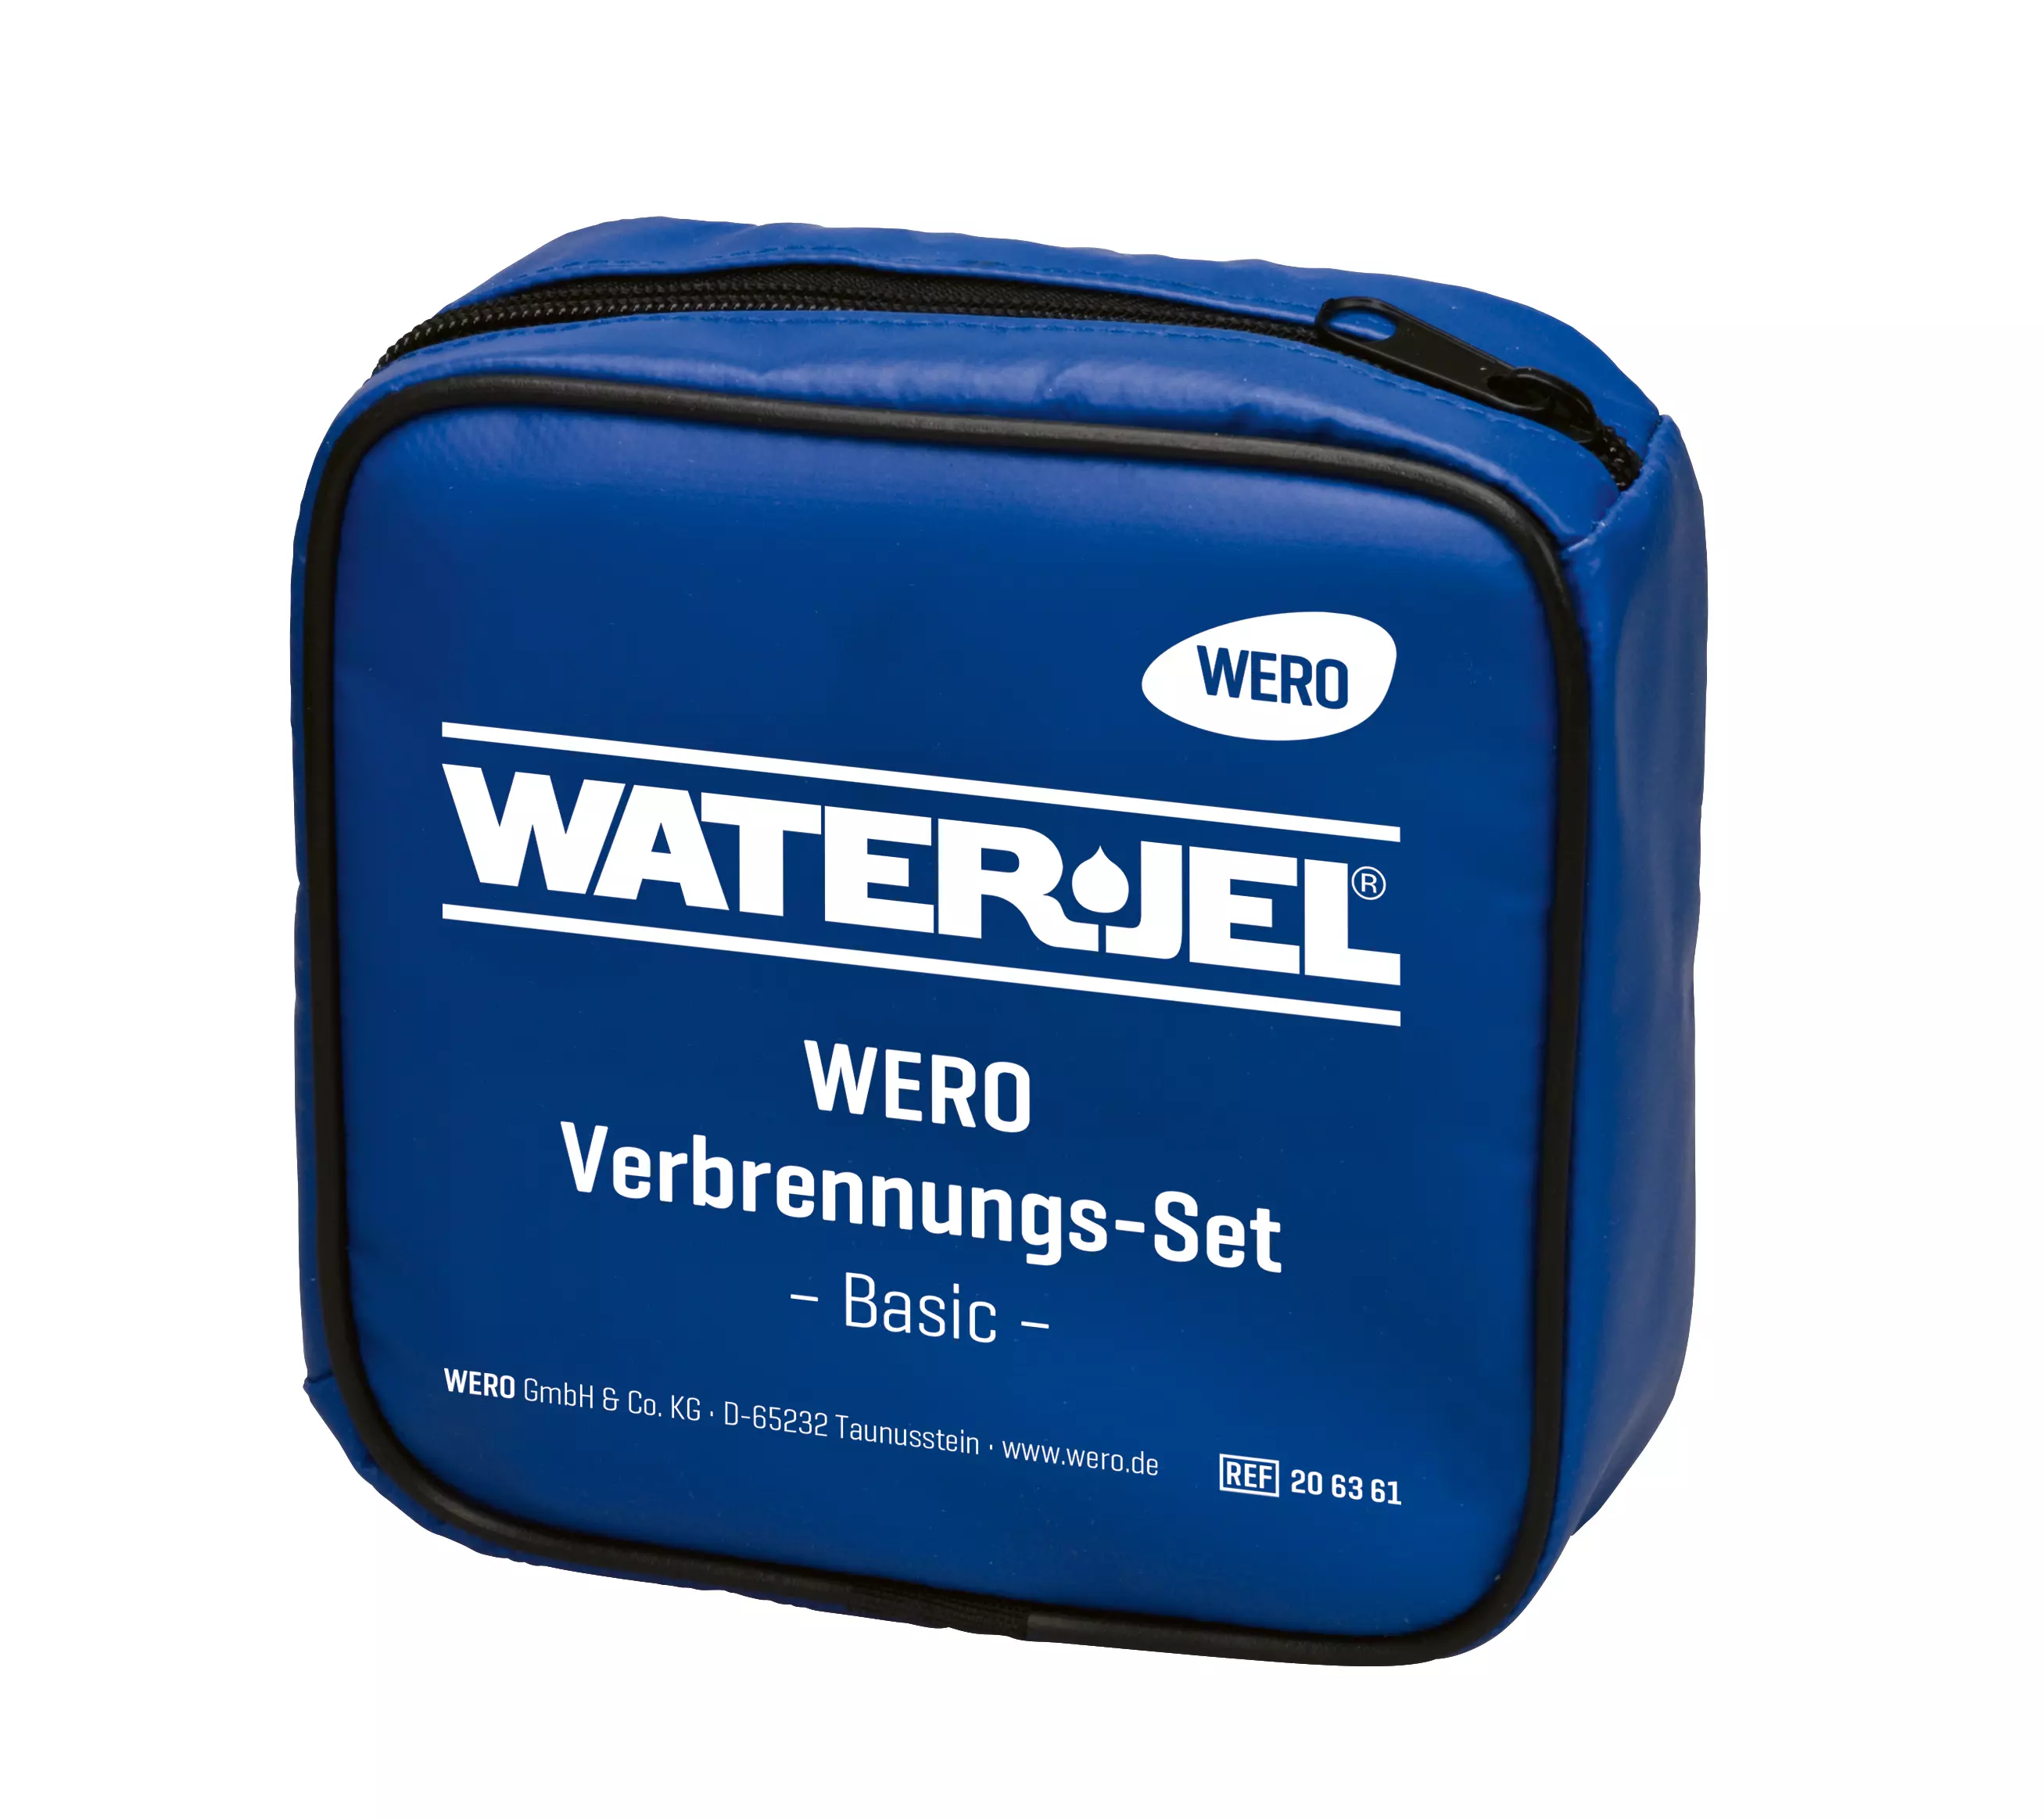 WERO Verbrennungs-Set, Basic - Tasche